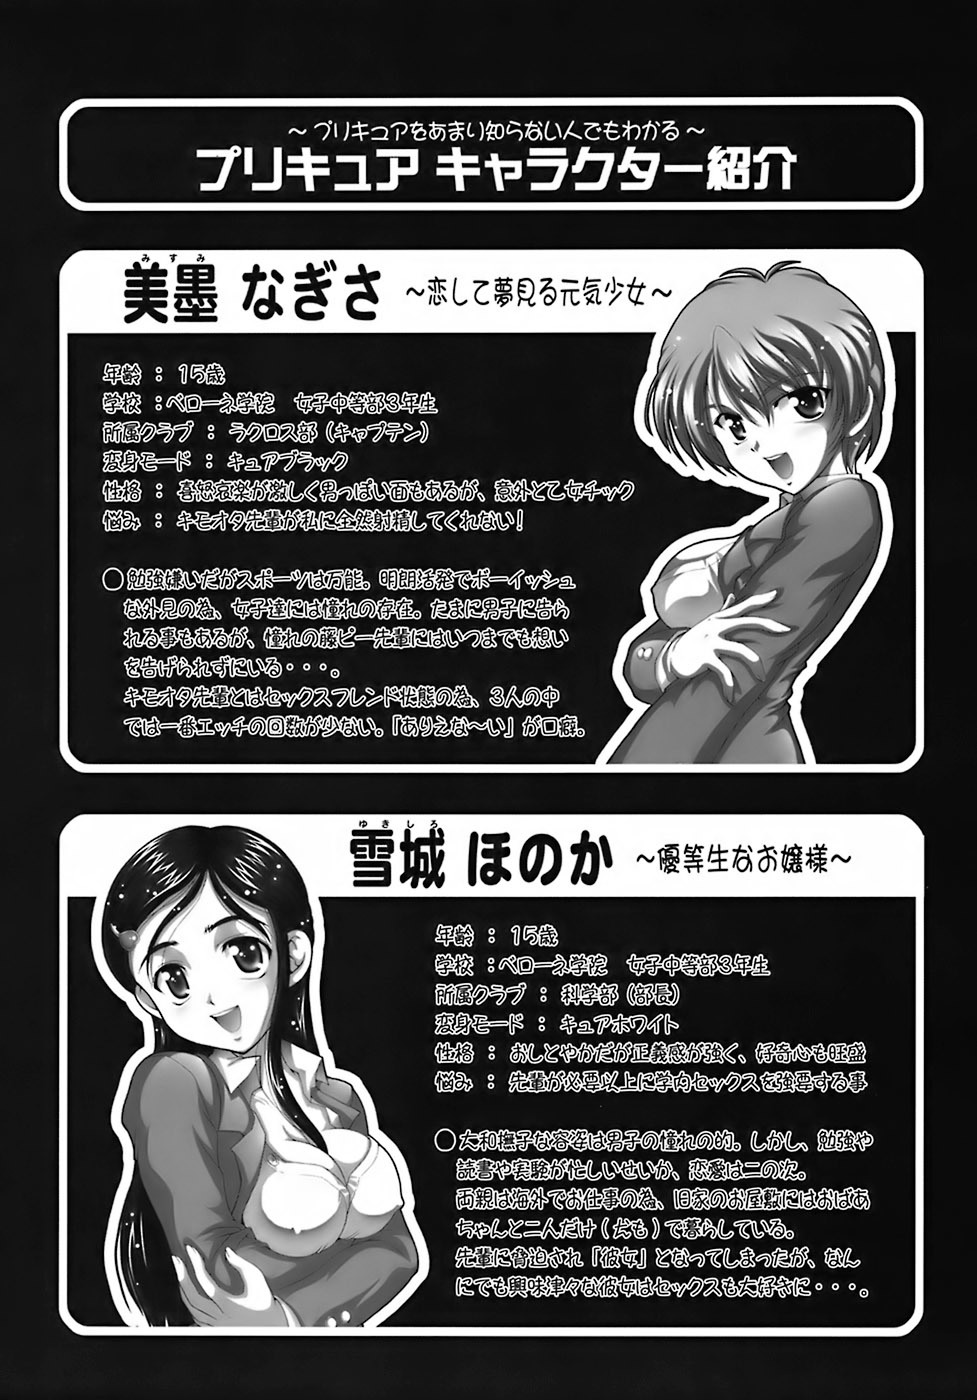 Milk Hunters 6 futari wa pretty cure 3 hentai manga